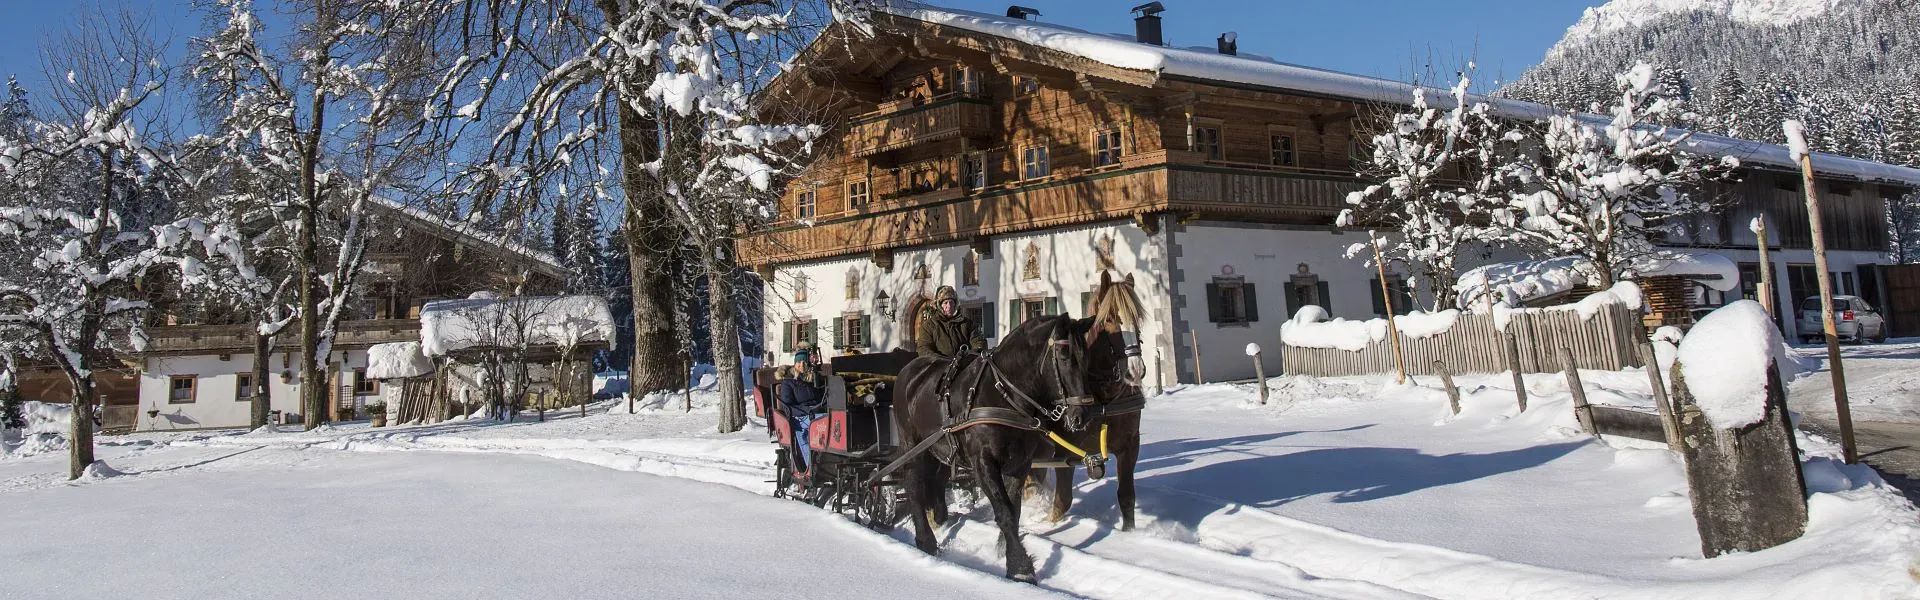 Kutsche vorm Bauernhof im Winter - Region St. Johann in Tirol